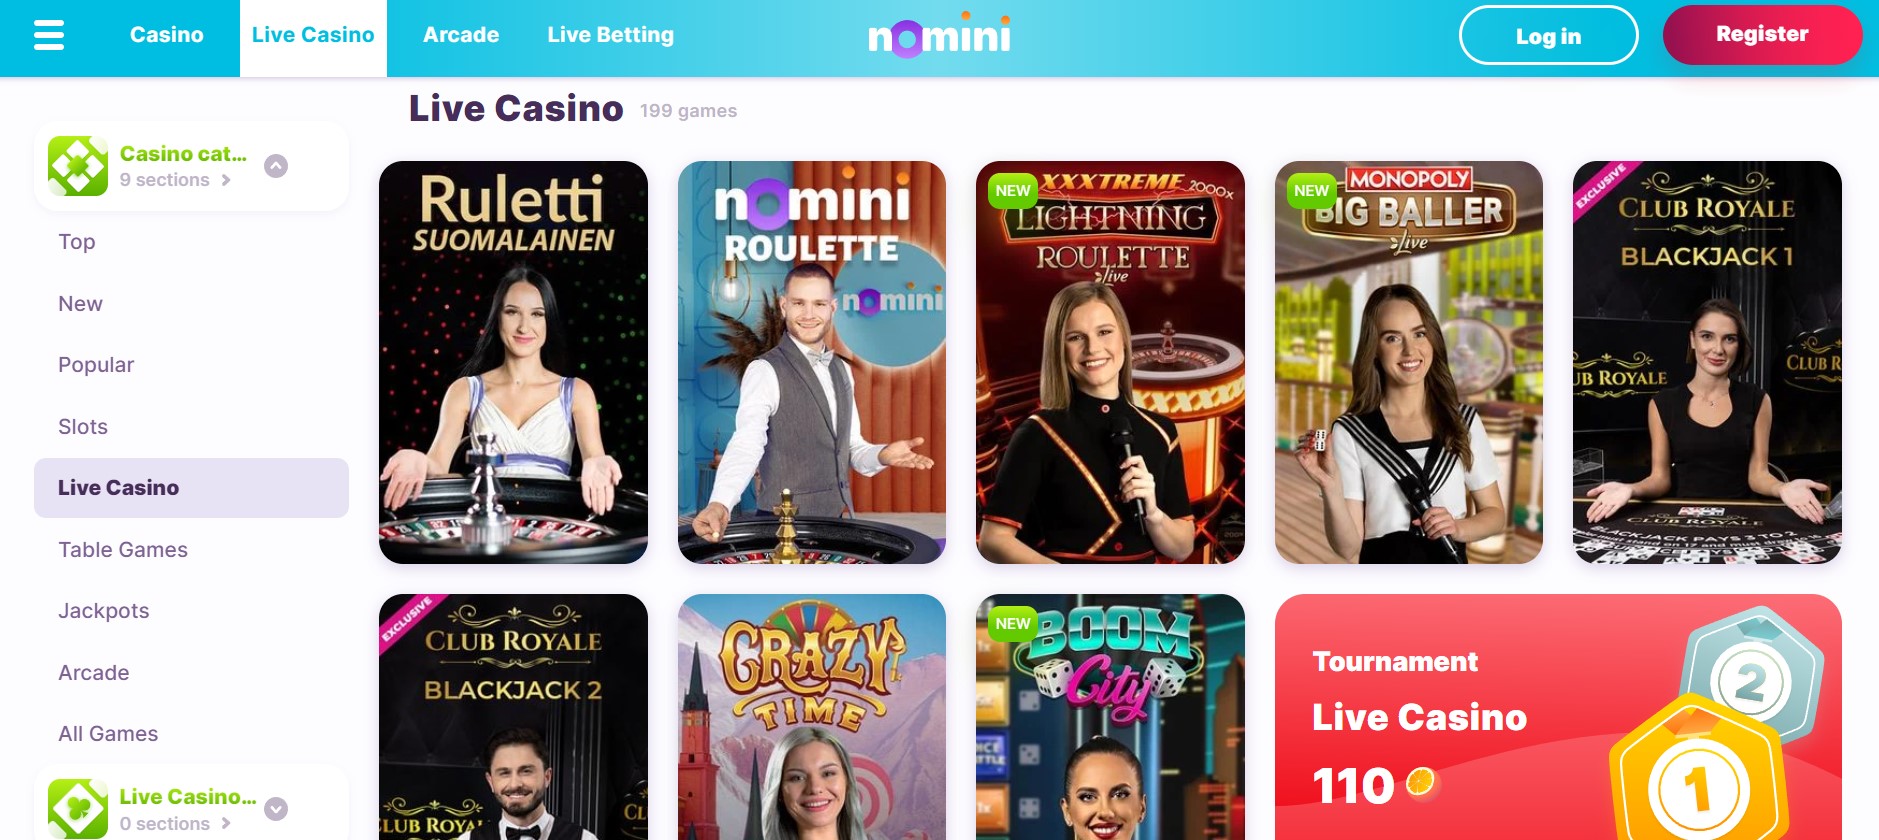 Nomini live casino